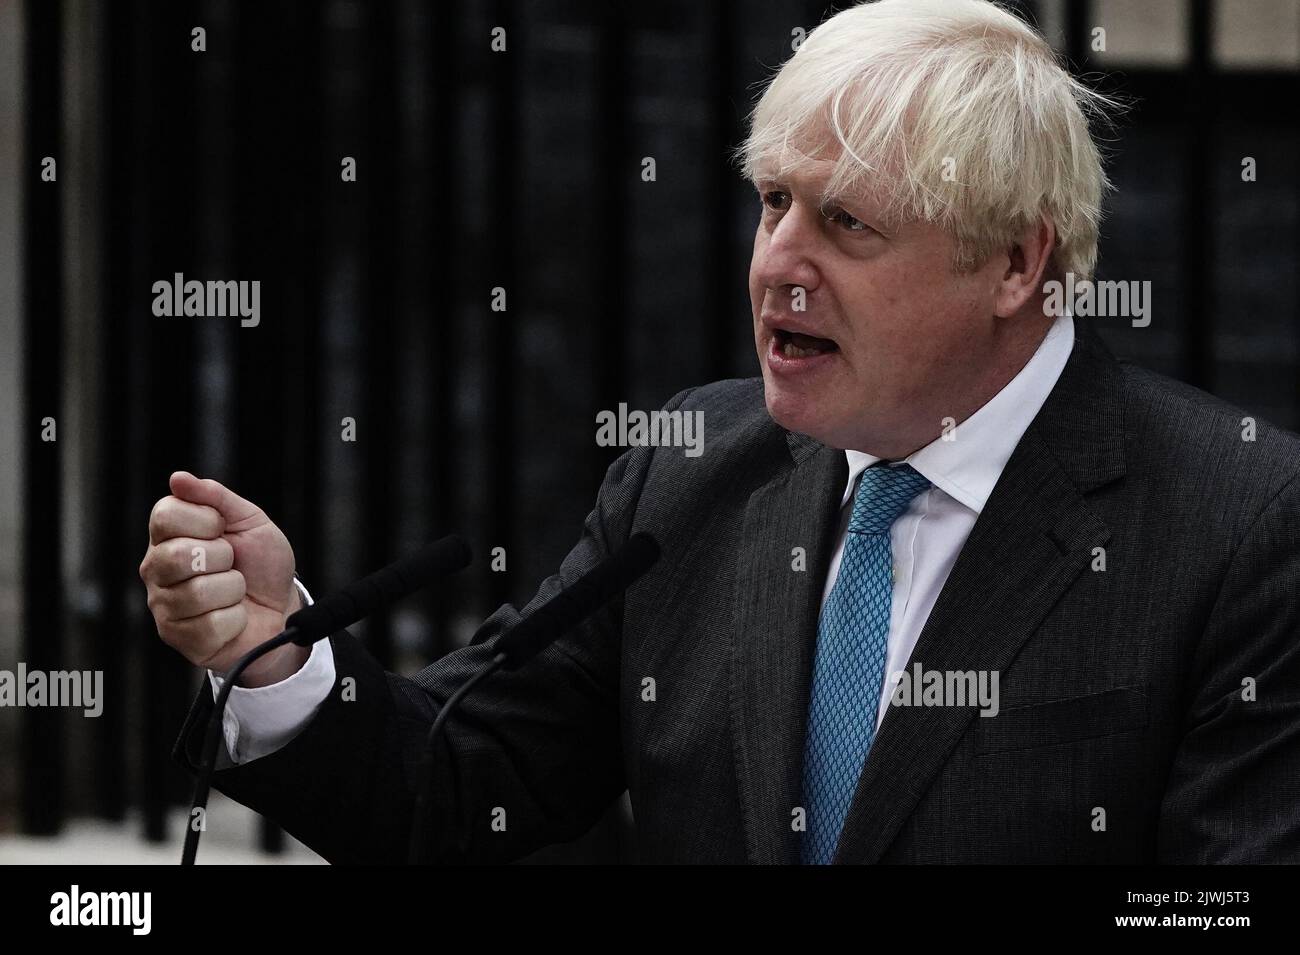 El primer ministro saliente, Boris Johnson, pronuncia un discurso ante el 10 Downing Street, Londres, antes de salir a Balmoral para una audiencia con la reina Isabel II para renunciar formalmente como primer ministro. Fecha de la foto: Martes 6 de septiembre de 2022. Foto de stock